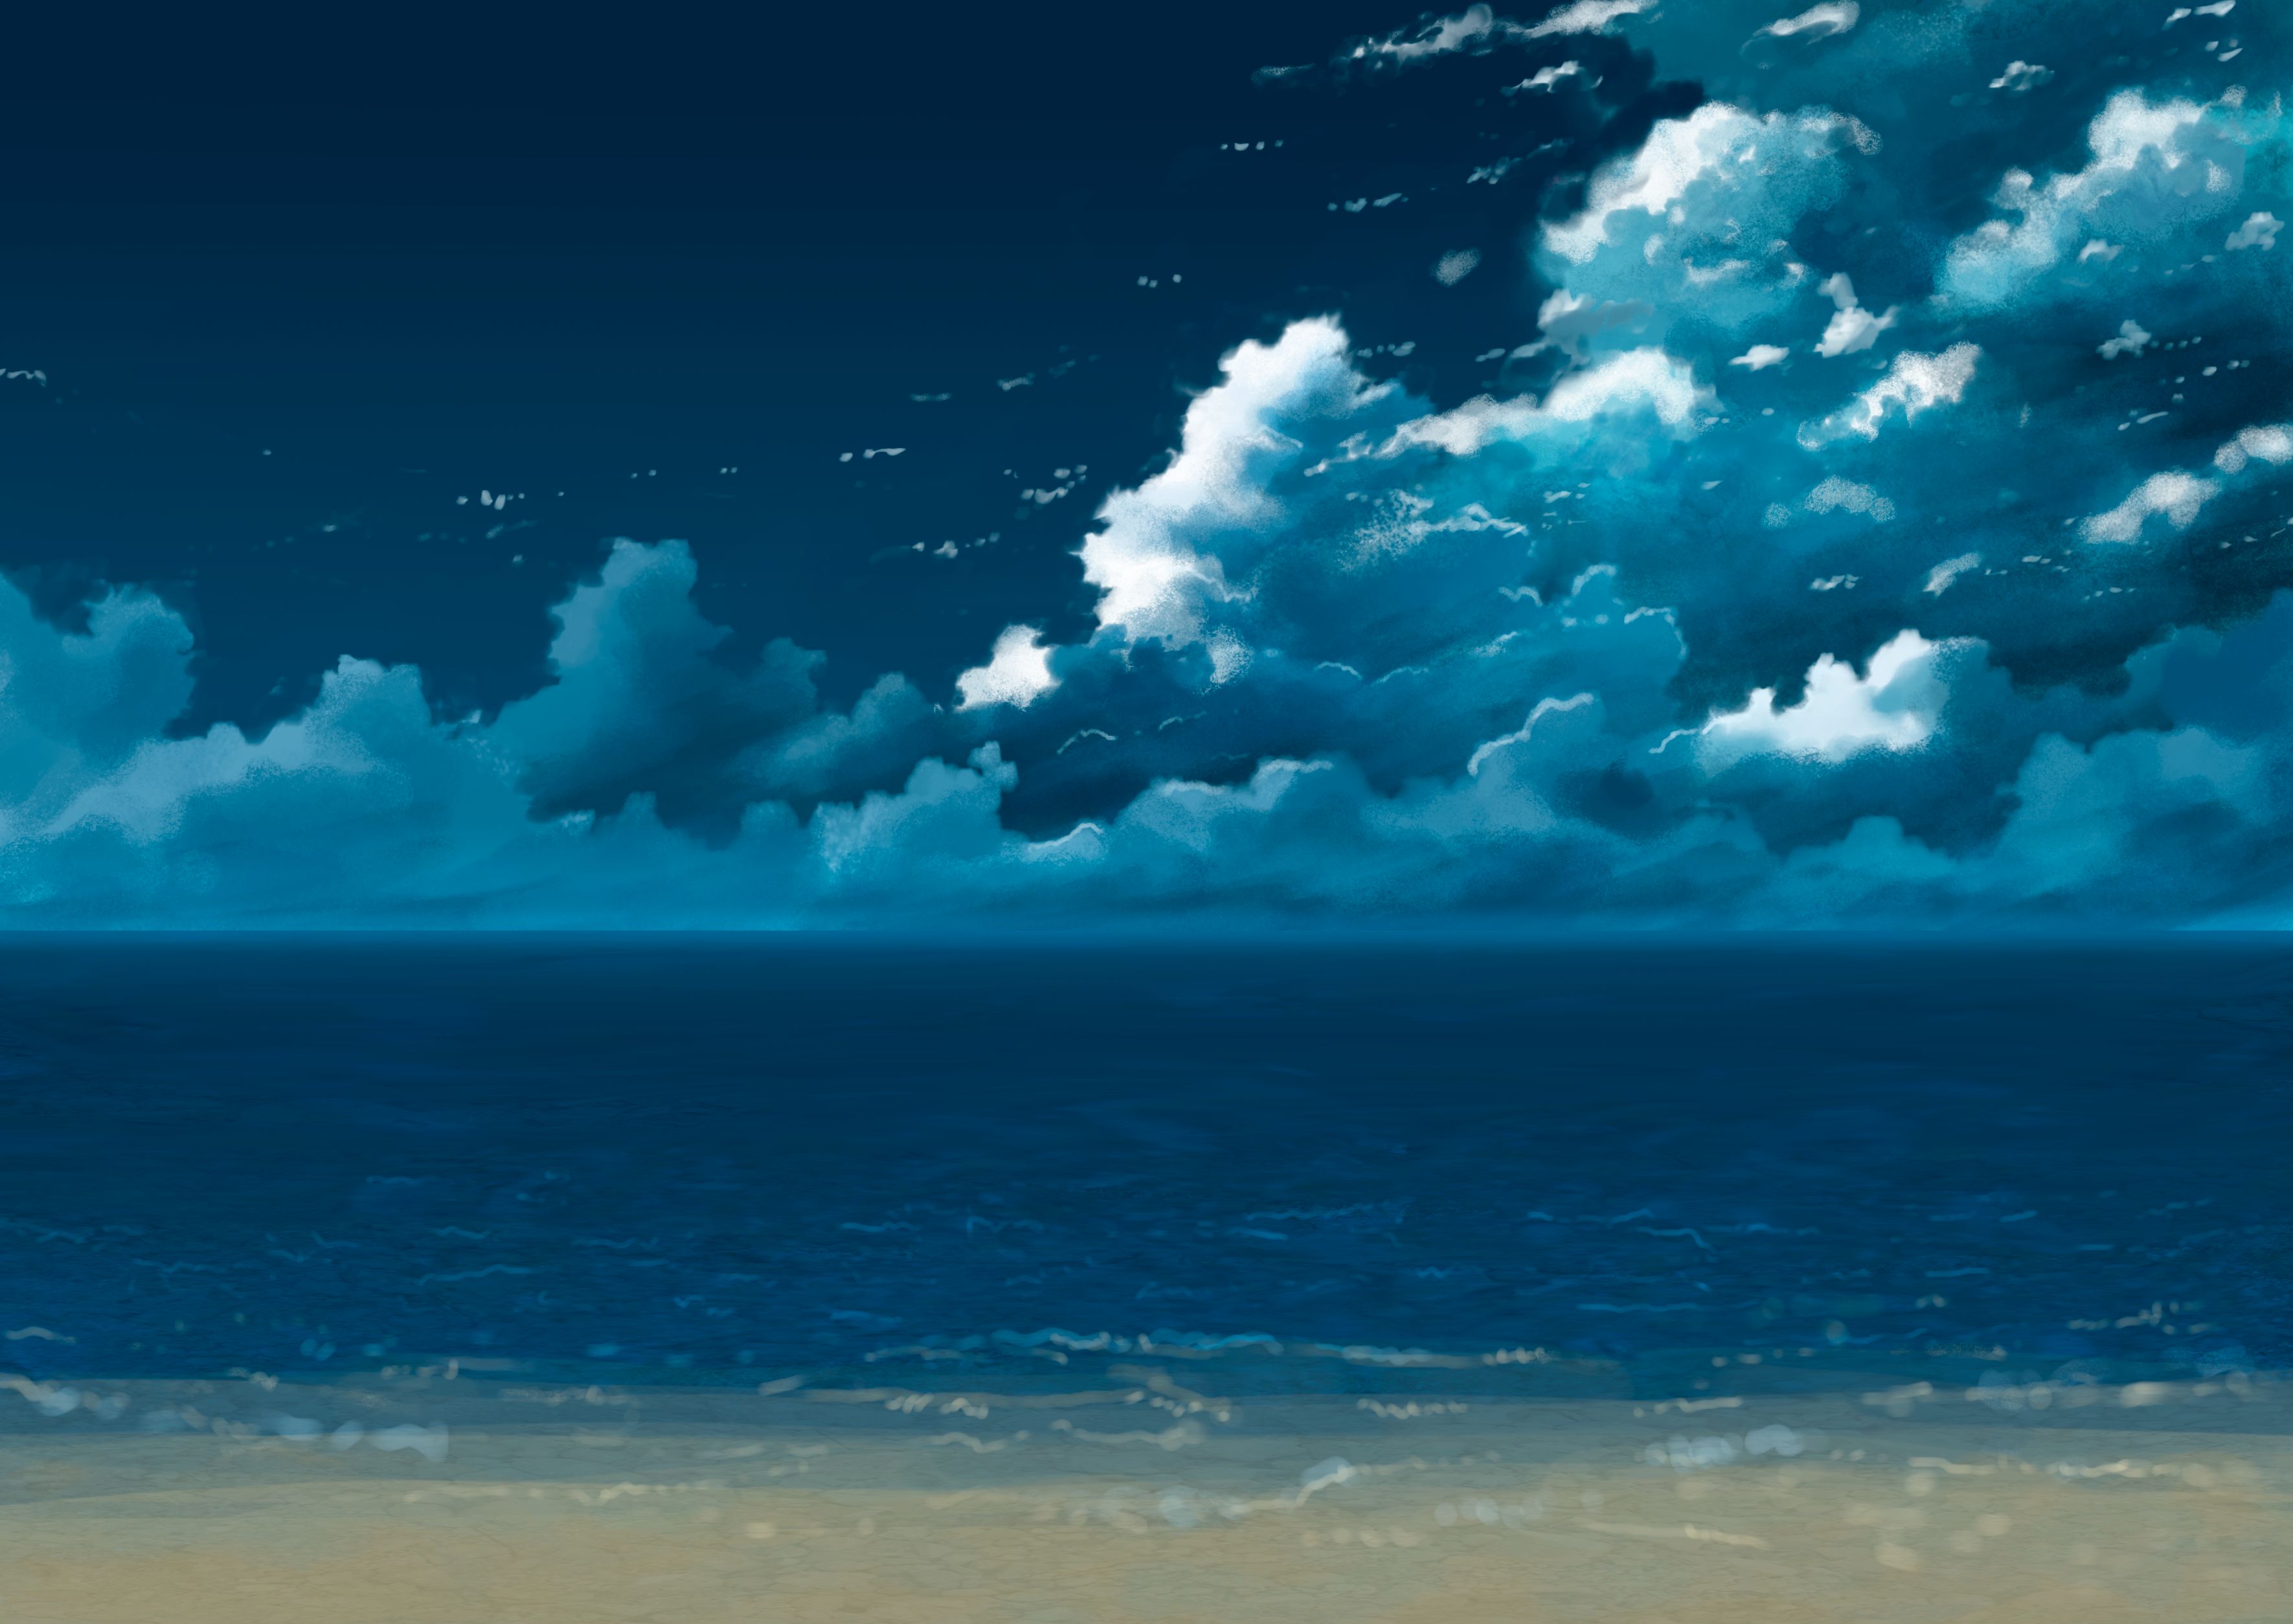 Скачать обои бесплатно Аниме, Пляж, Оригинал картинка на рабочий стол ПК